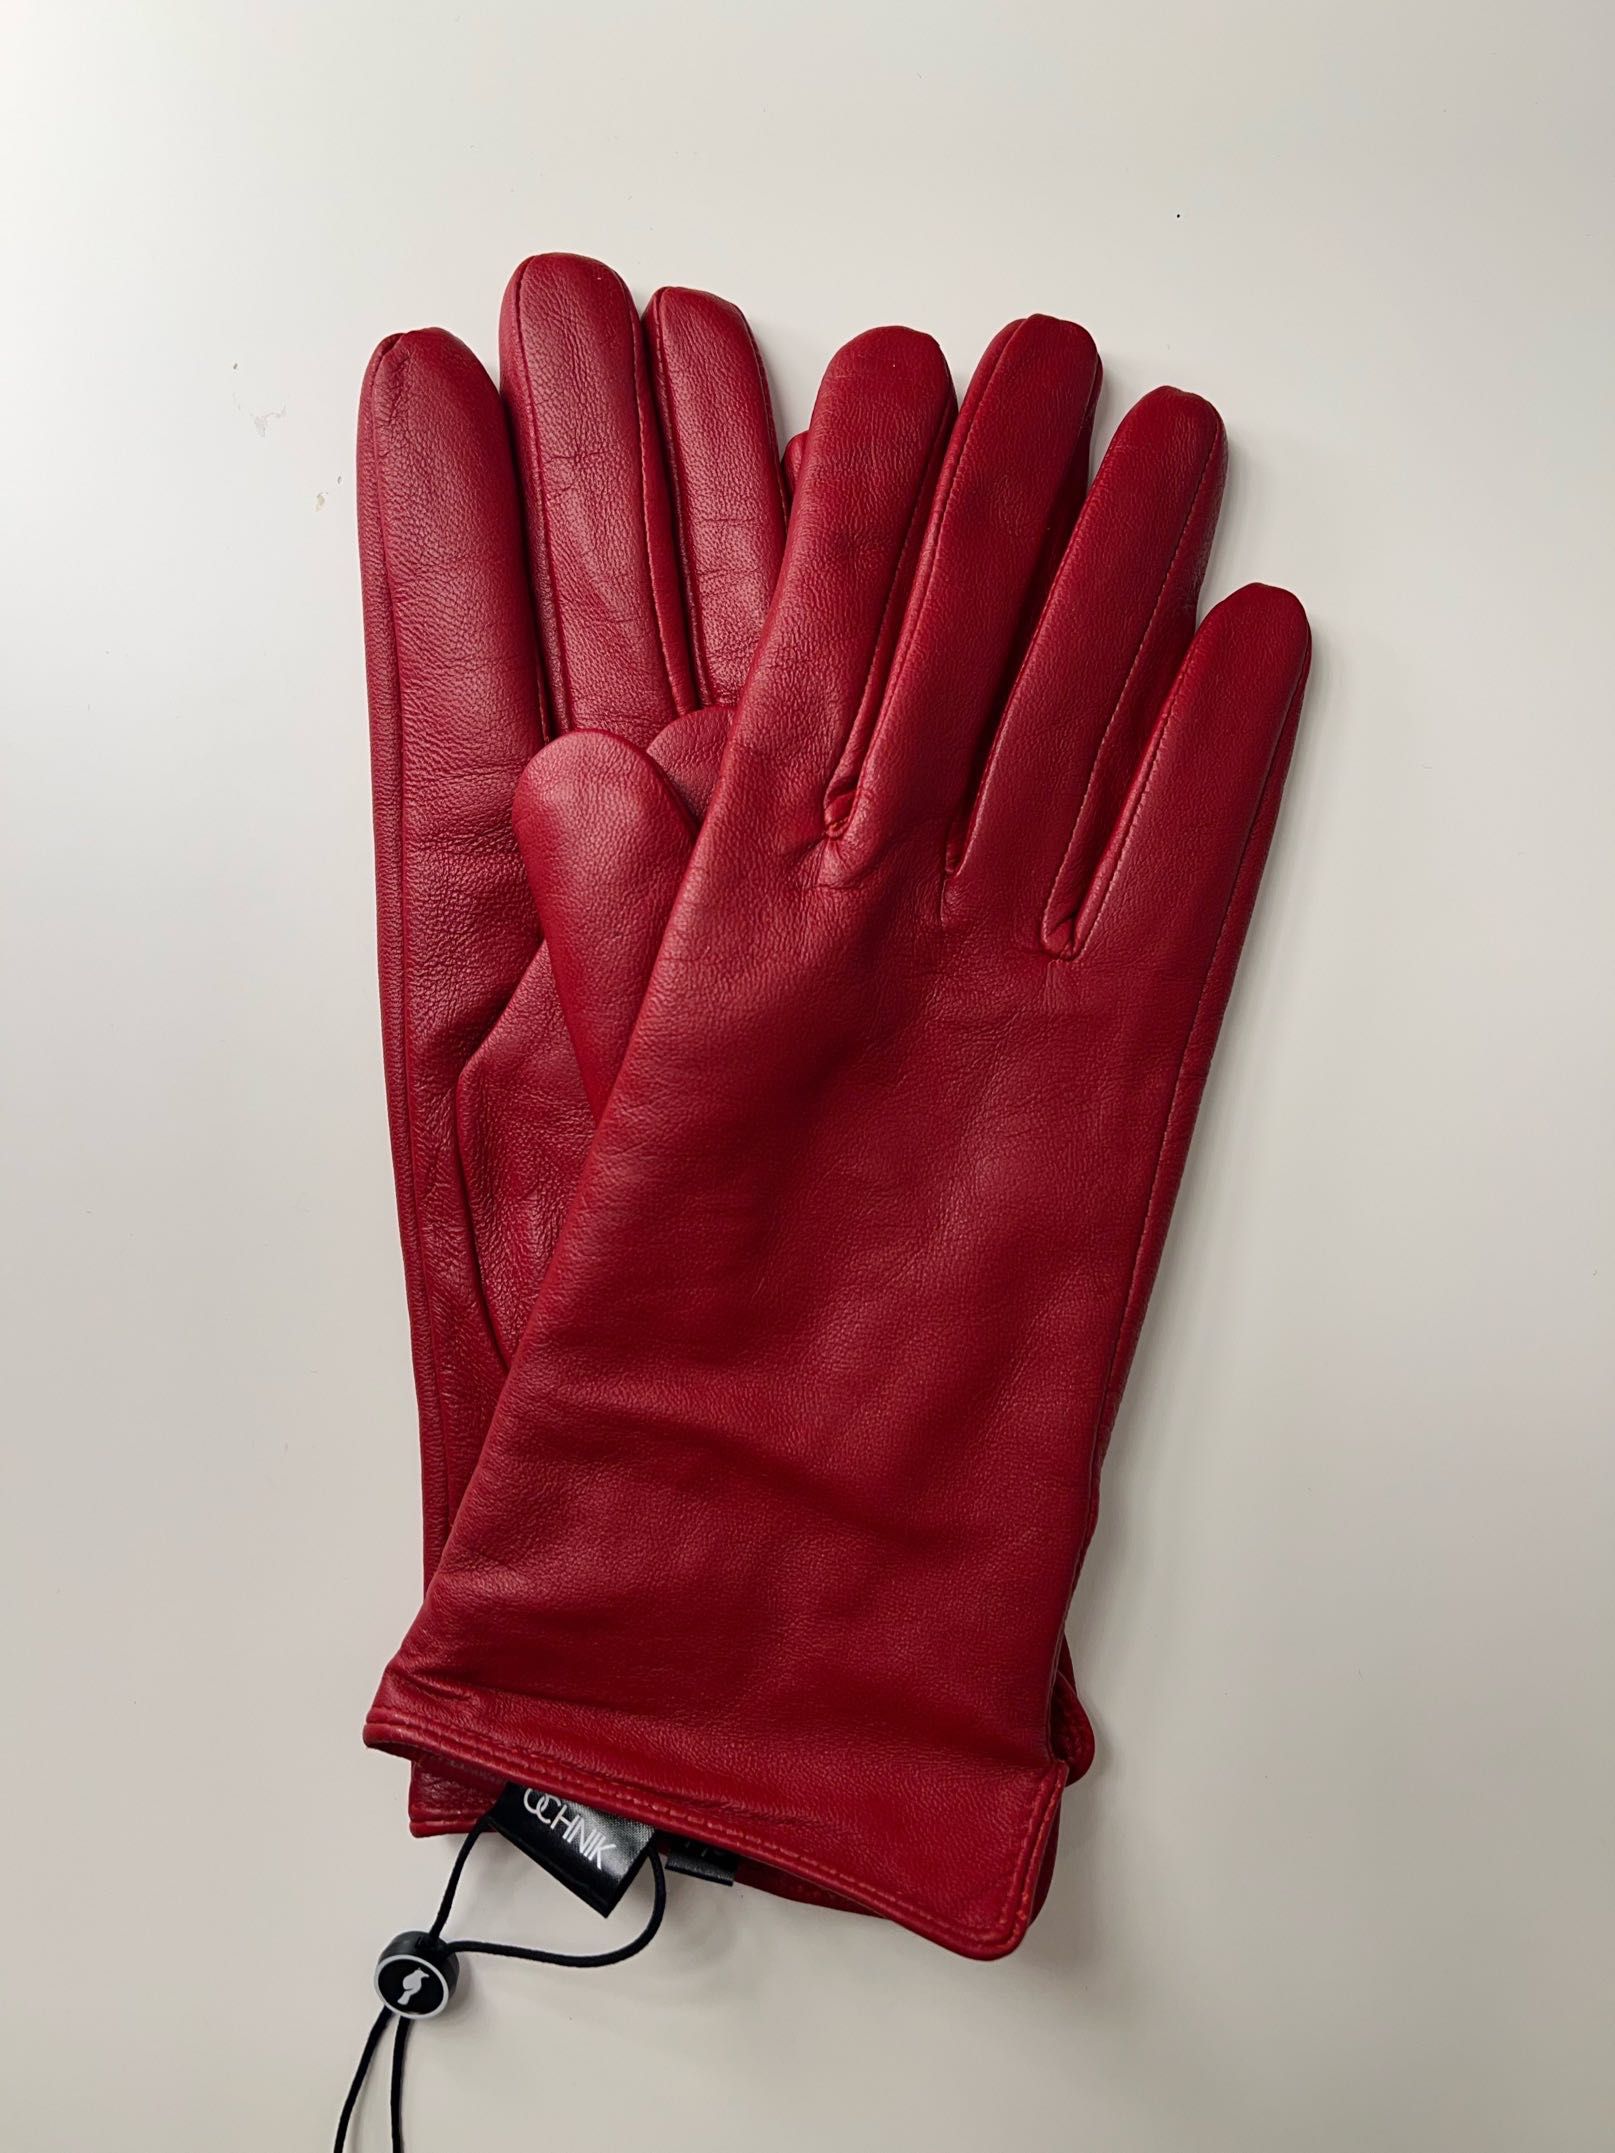 Czerwone skórzane rękawiczki, Ochnik - rozm. 7,5